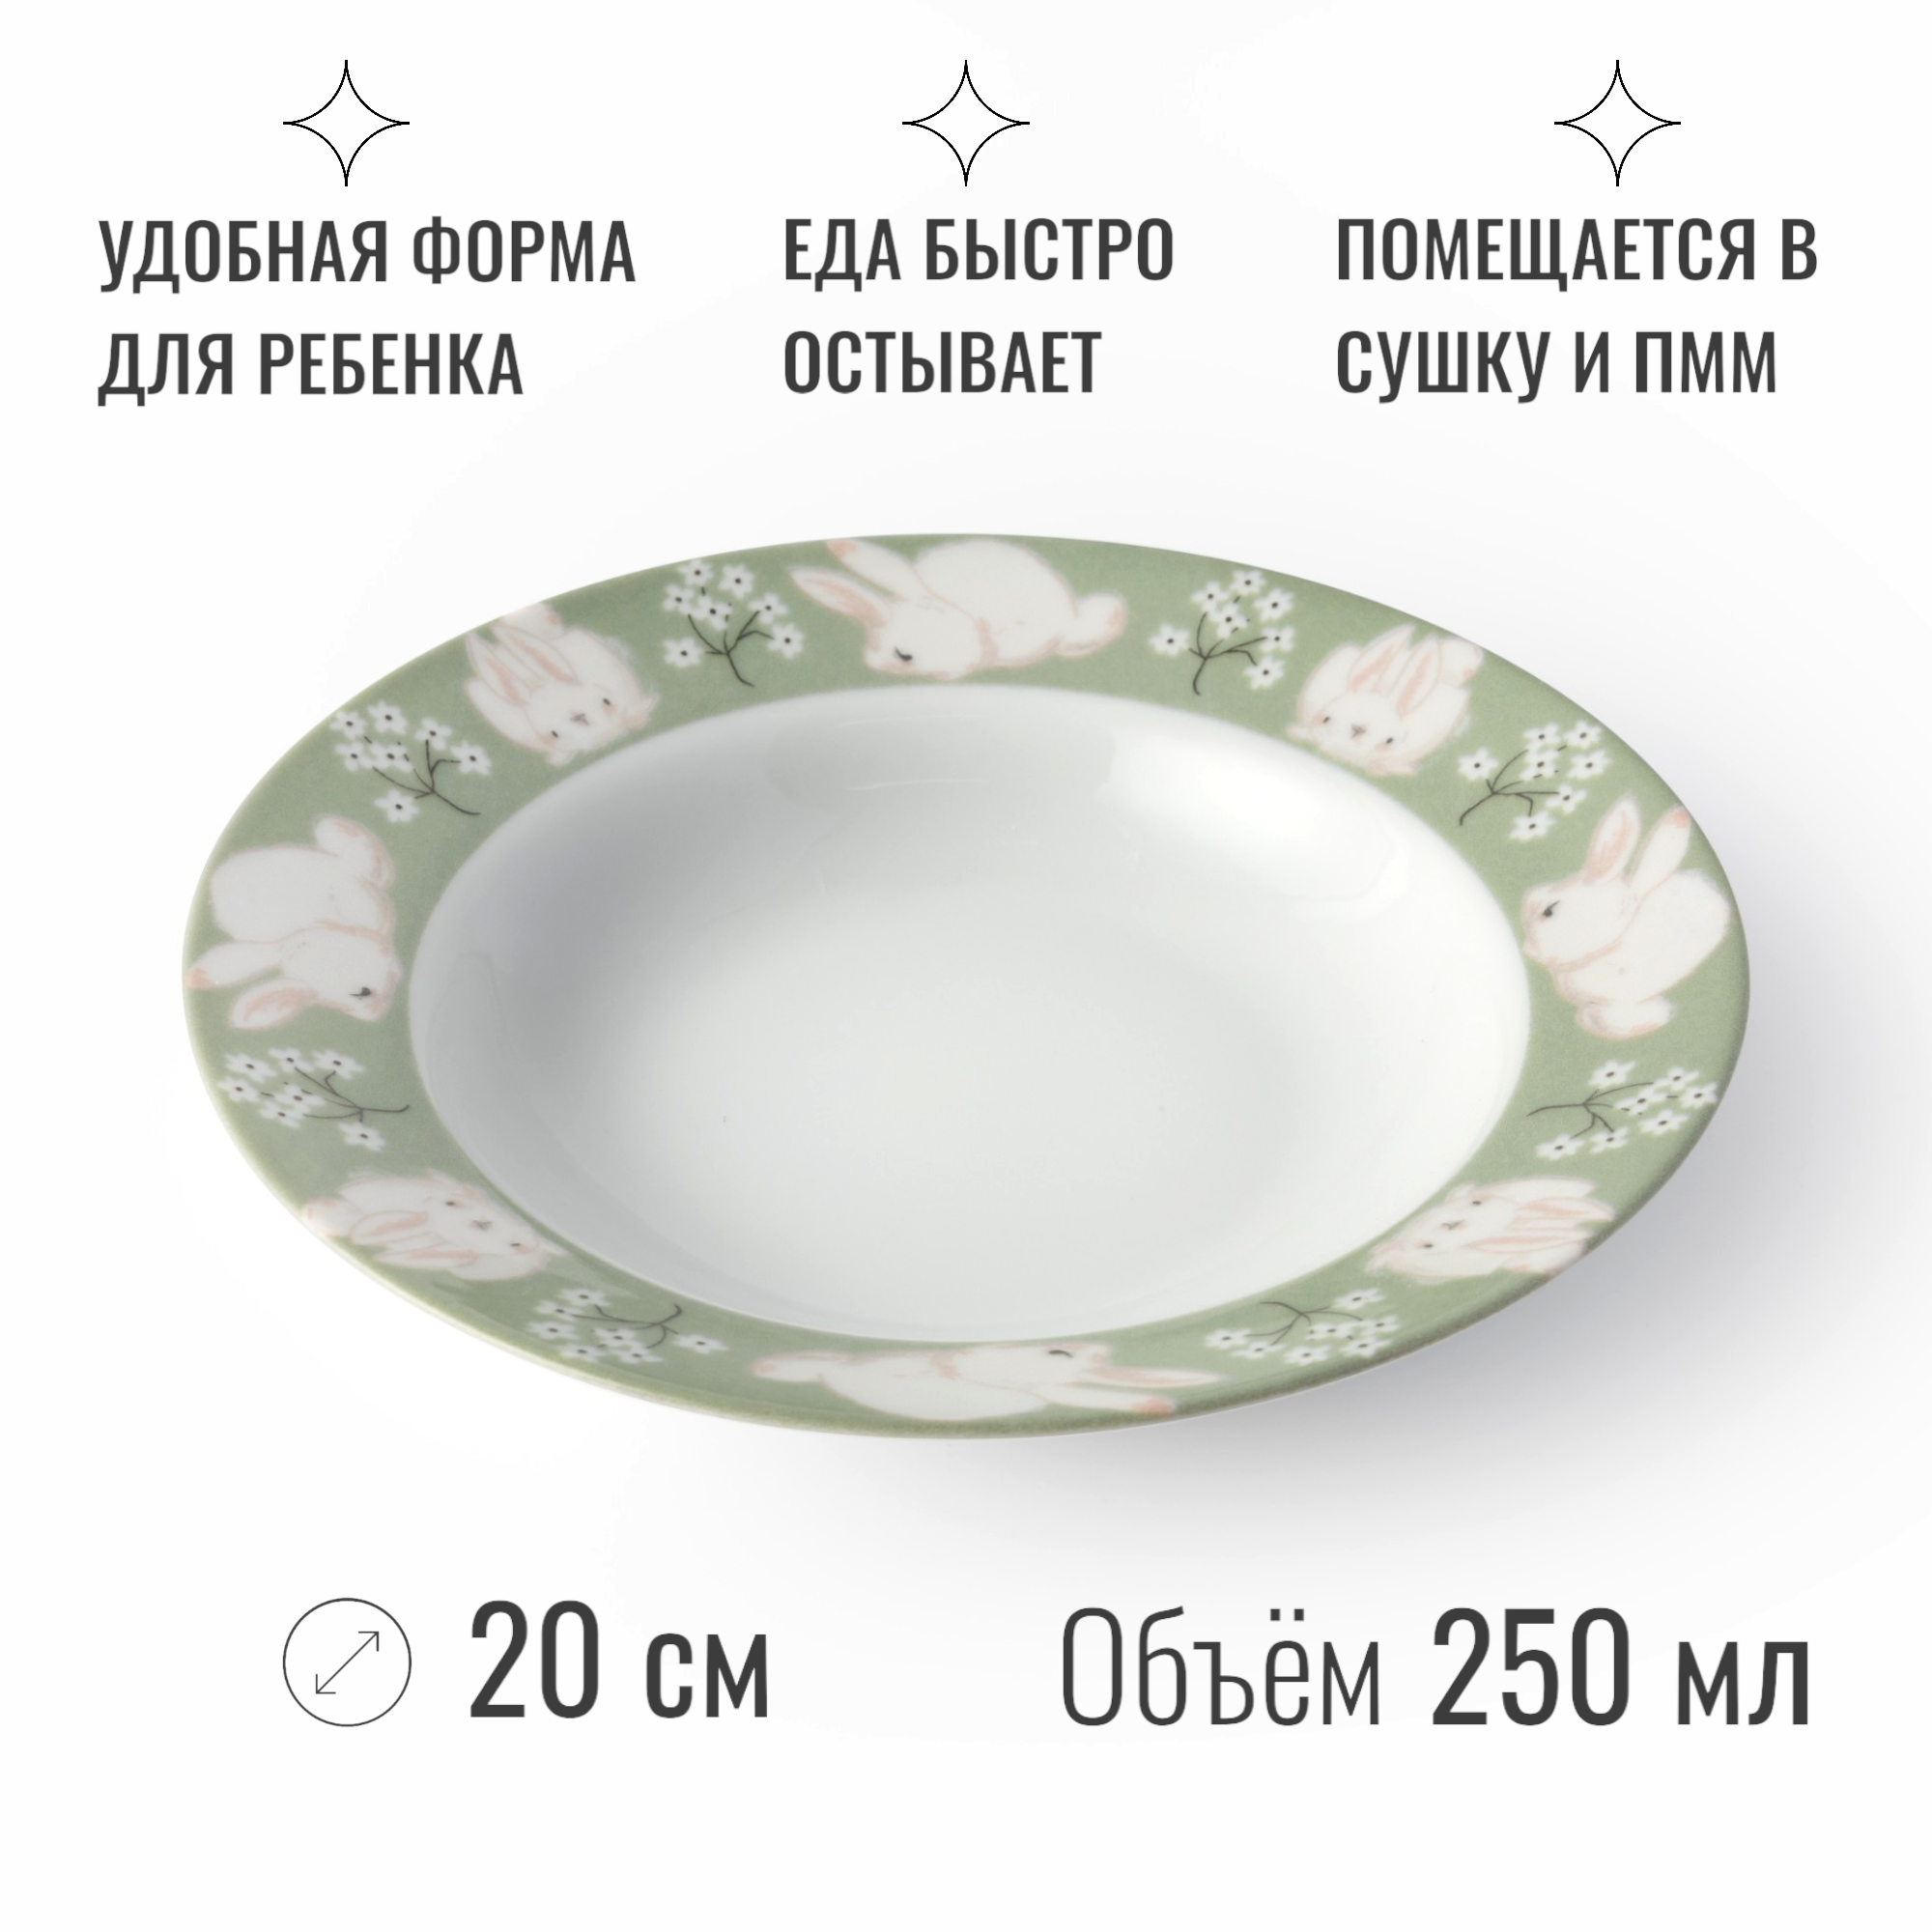 Набор детской посуды из фарфора Зайка, 4 предмета, производство Беларусь